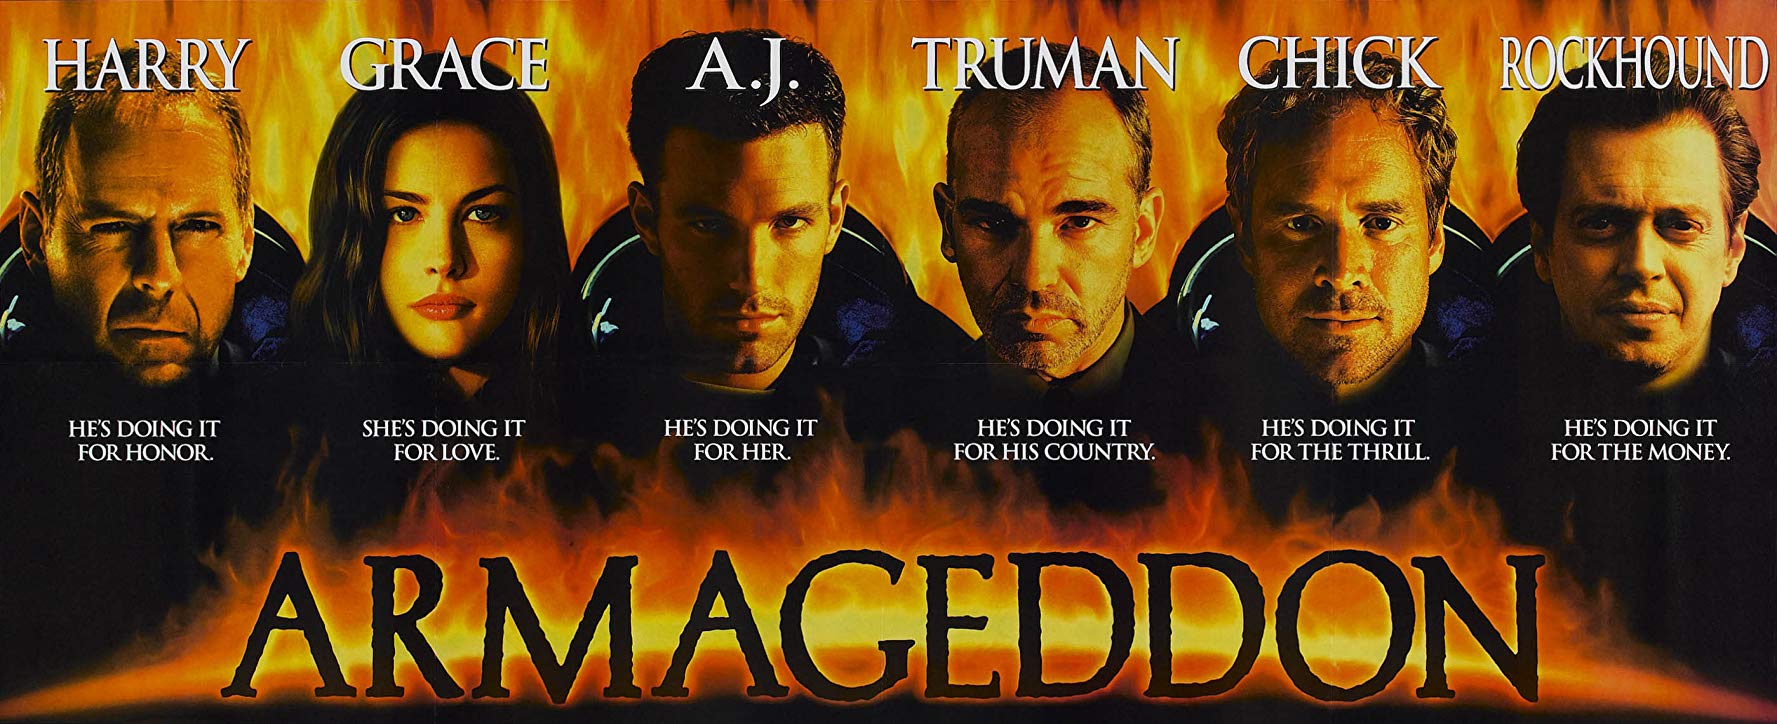 1998 Armageddon